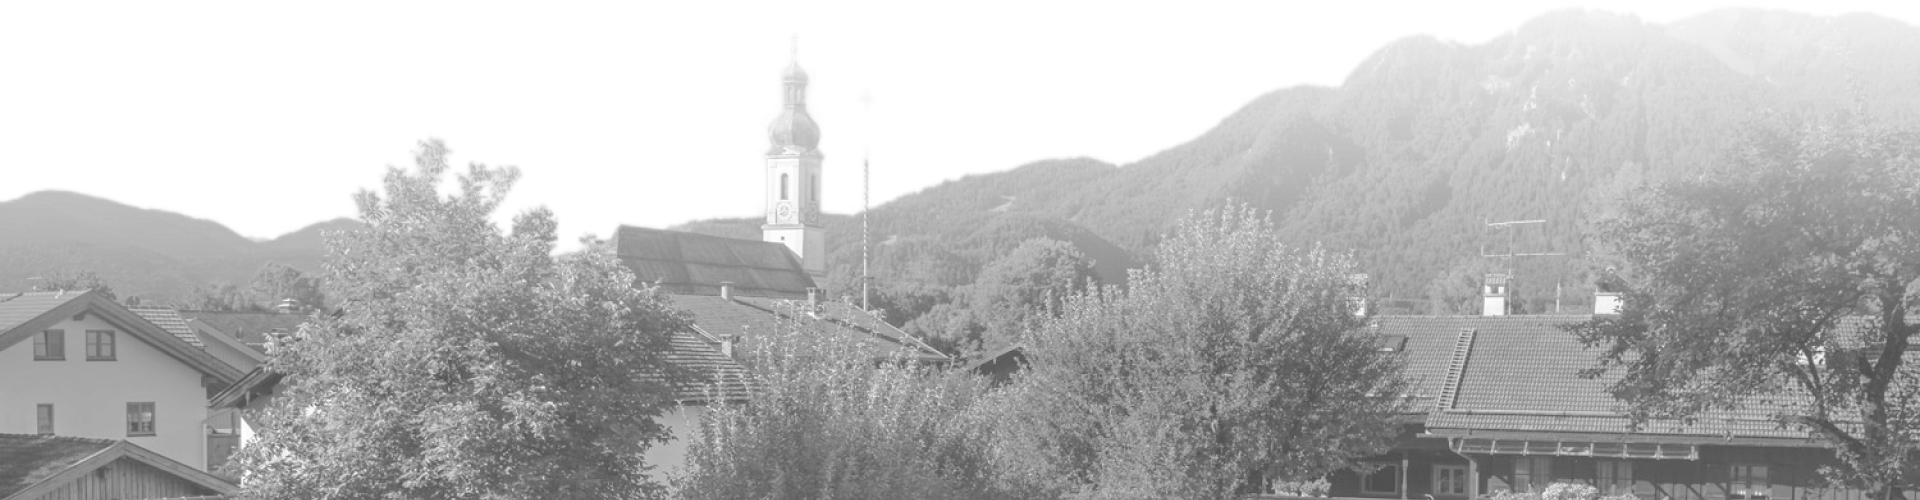 Ortsansicht Lenggries mit Blick auf die Kirche St. Jakob